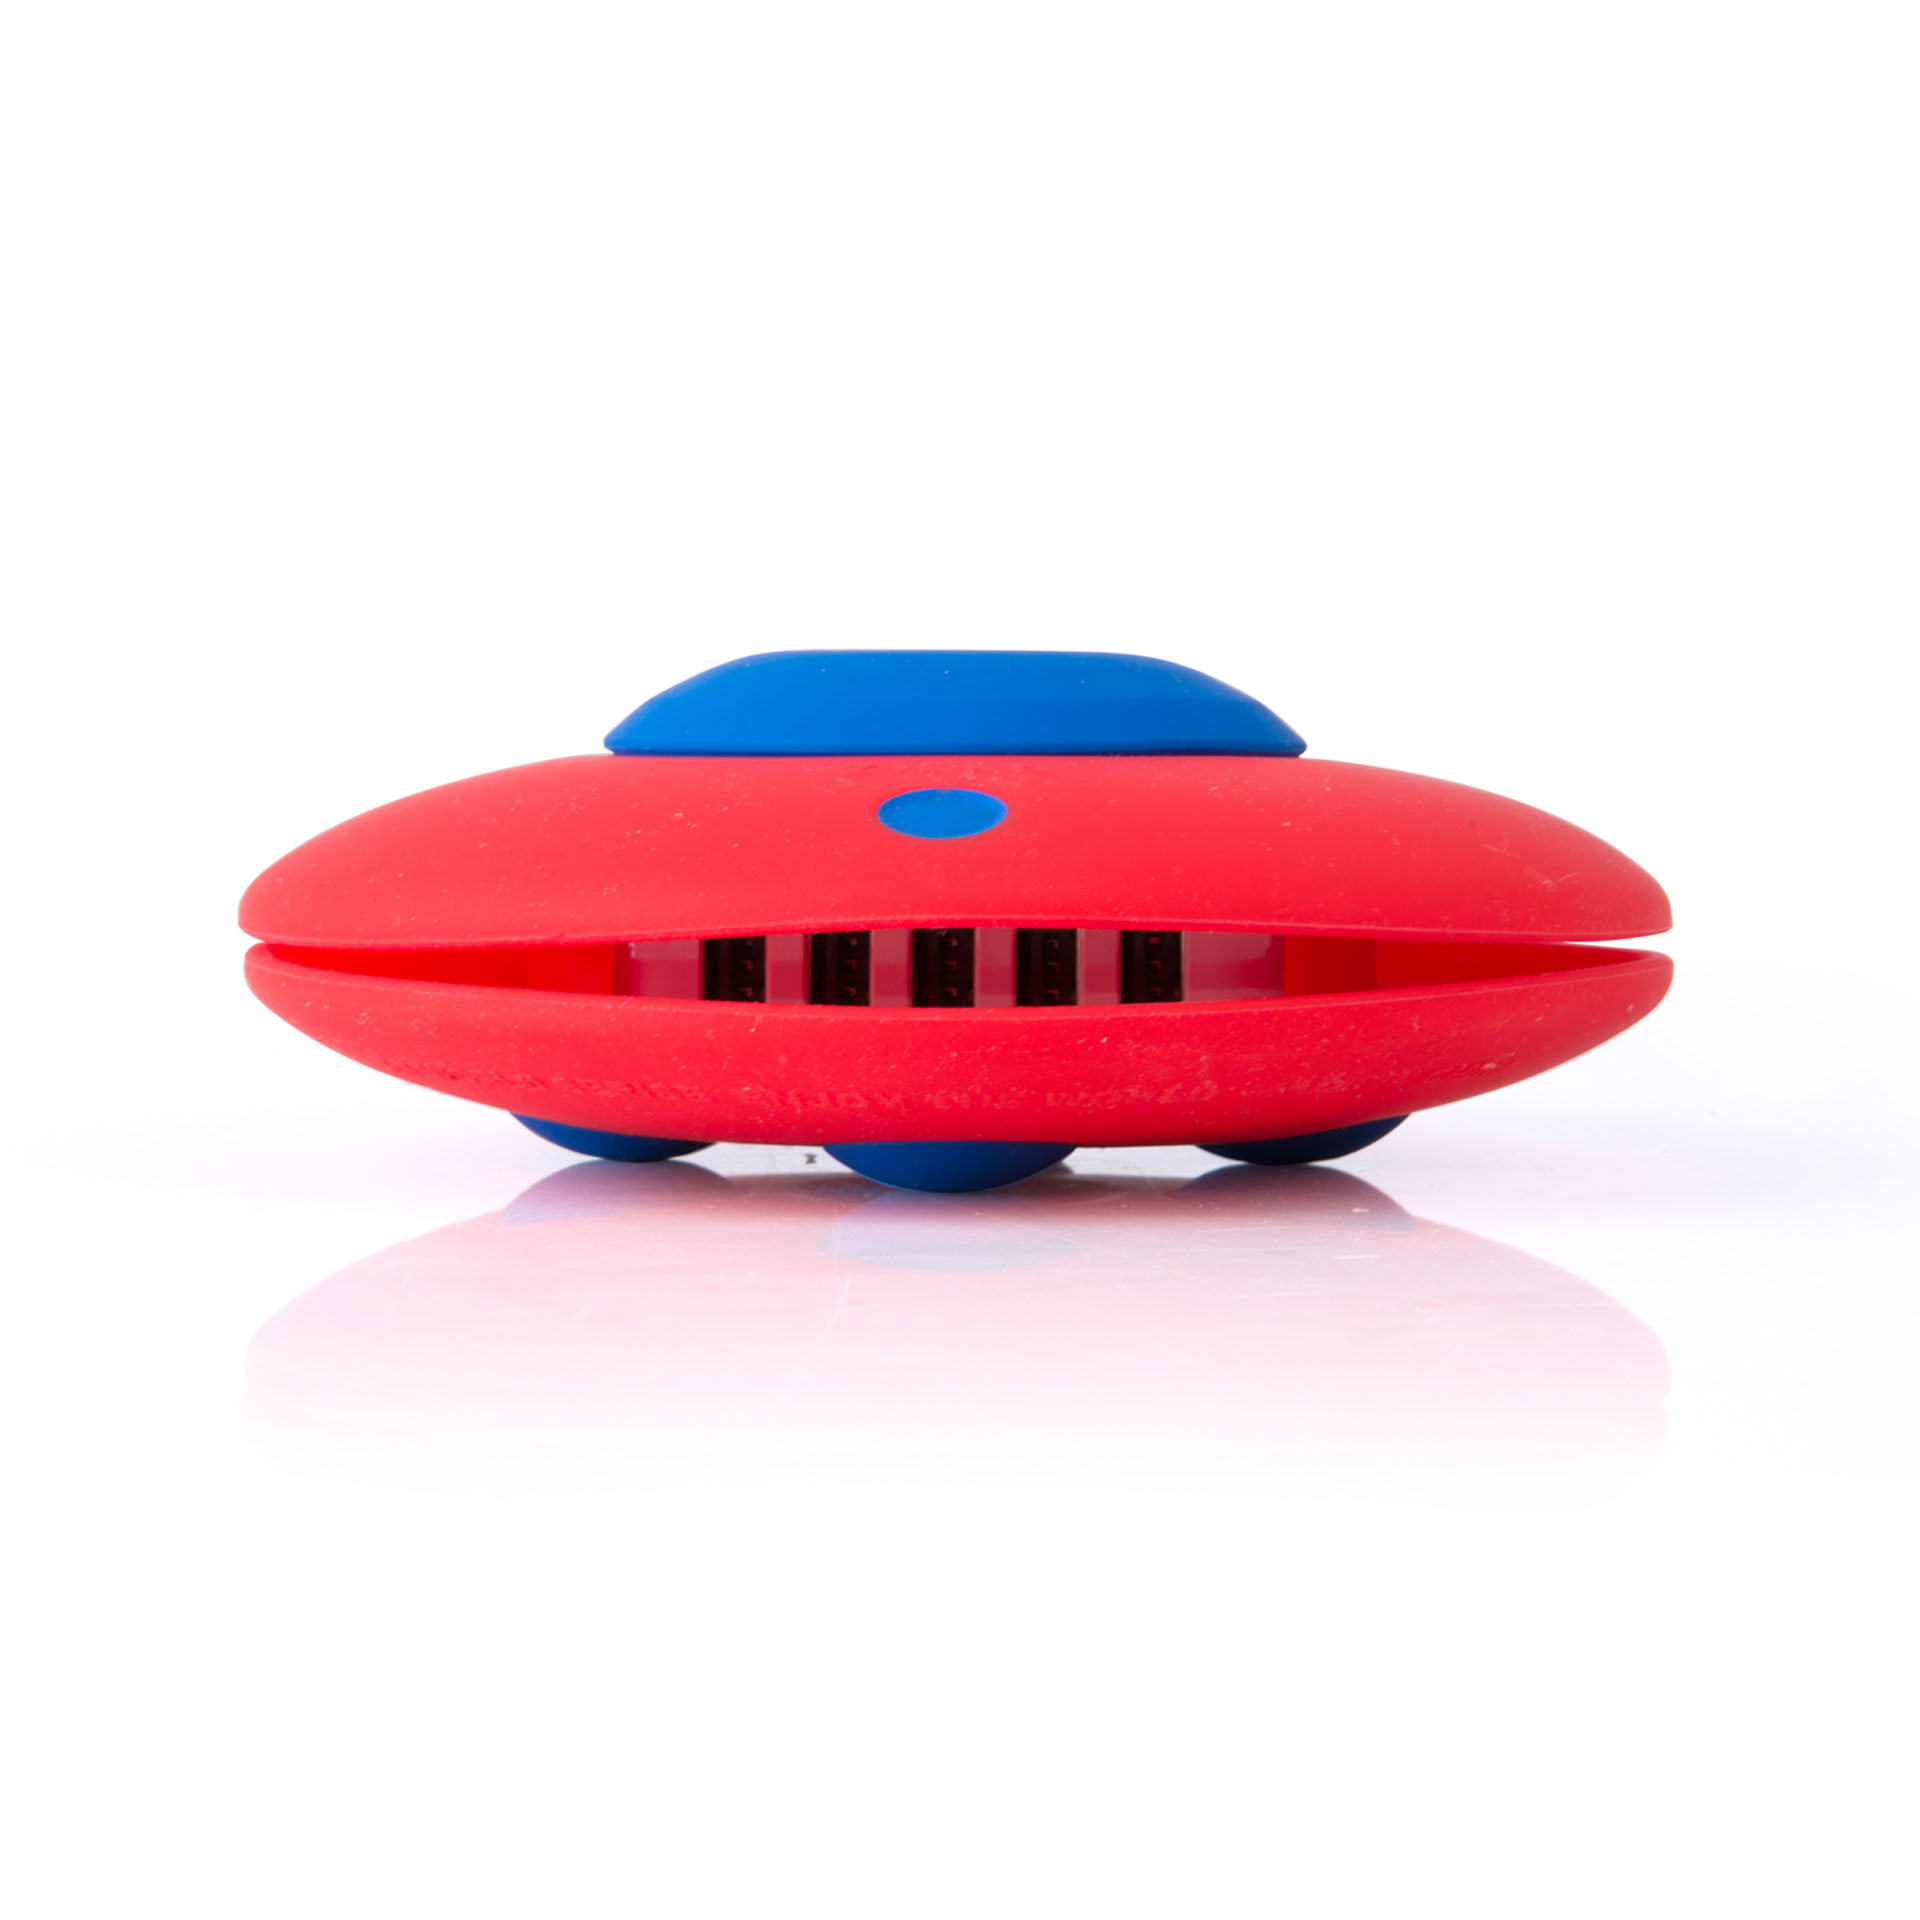 Caricatore 5 Porte Usb A Forma Di Ufo, Colore Rosso E Blue, , large